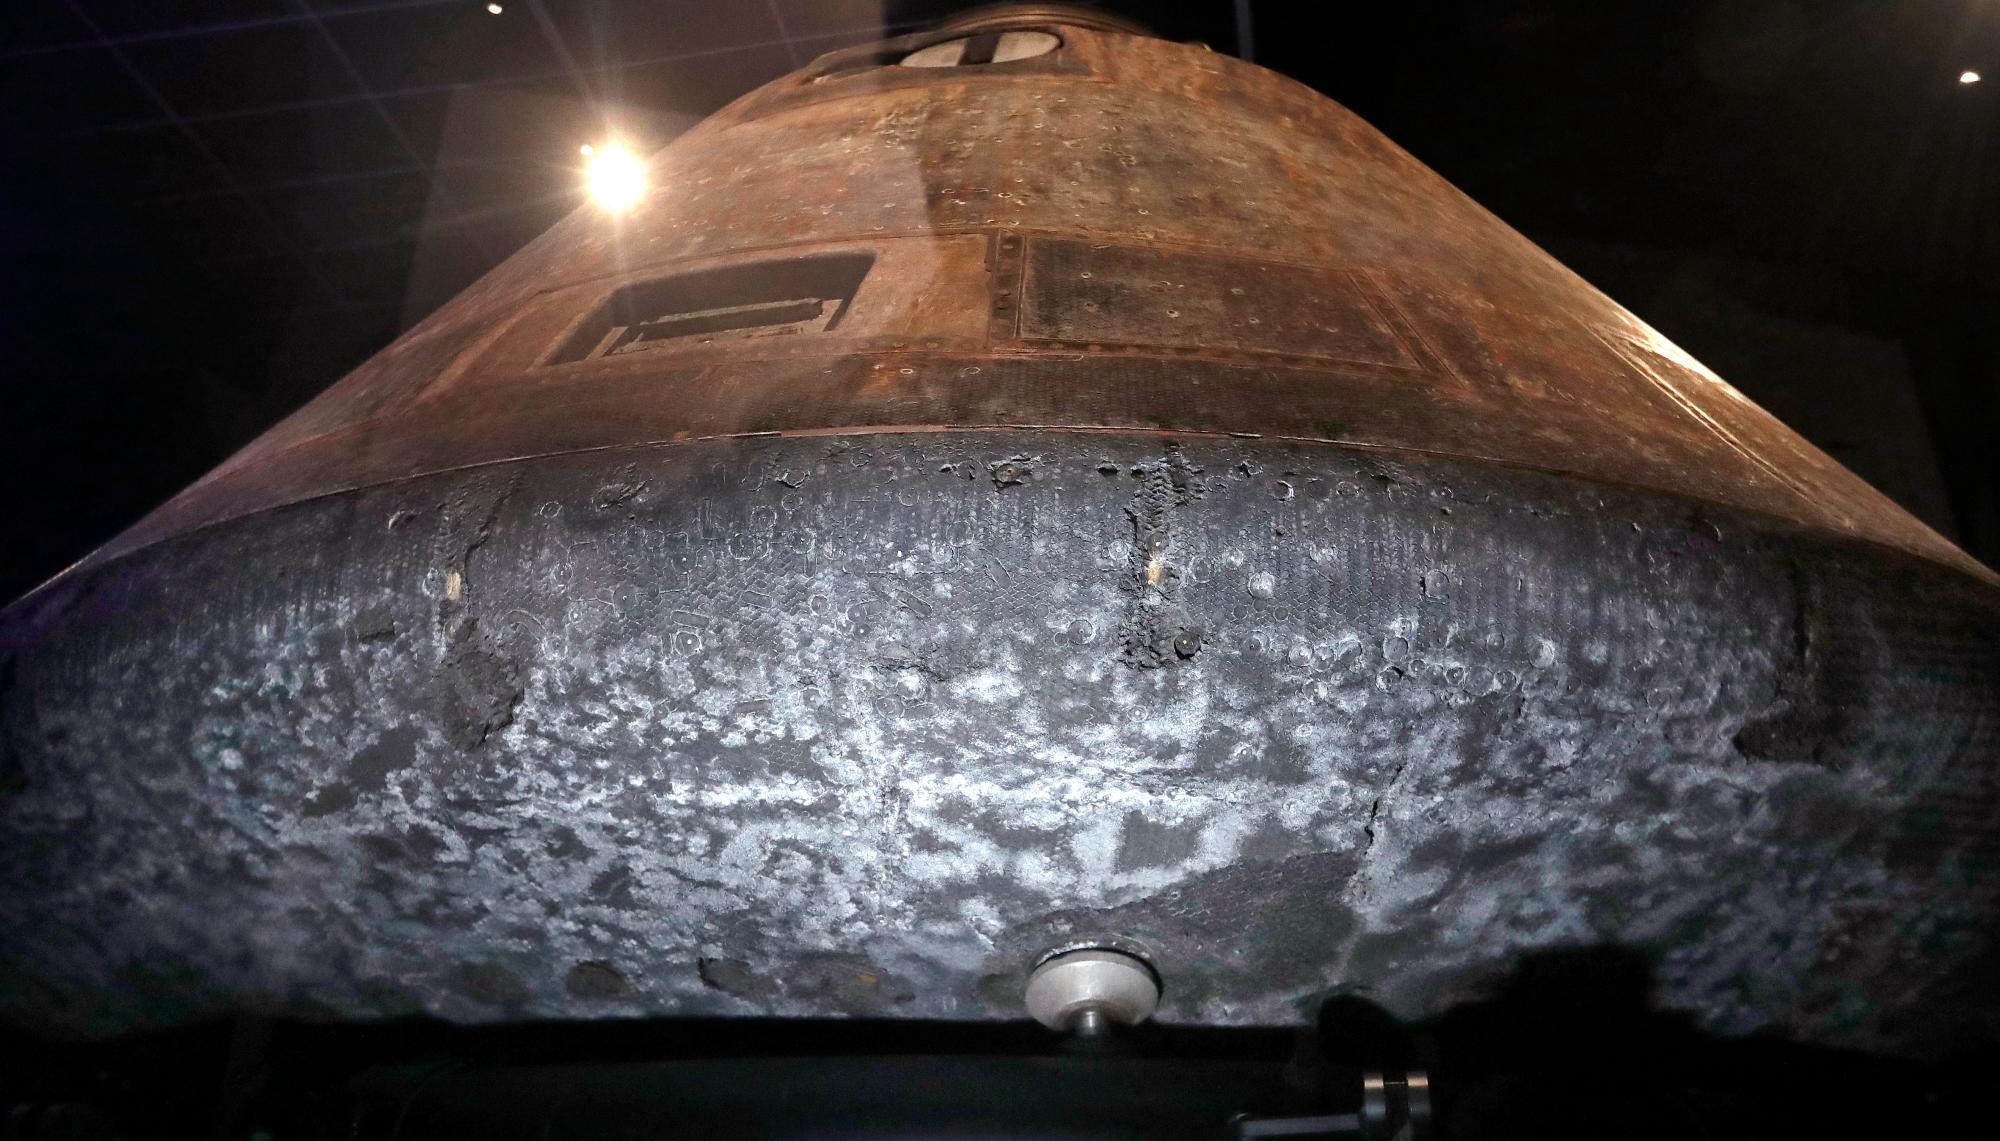 El módulo de comando de la NASA Apollo 11, Columbia, con su parte inferior escarchada y picada desde su reingreso a la atmósfera de la Tierra décadas antes, se asienta como la pieza central de Destination Moon: La exhibición de la misión Apollo 11 en el Museo de Vuelo en Seattle.